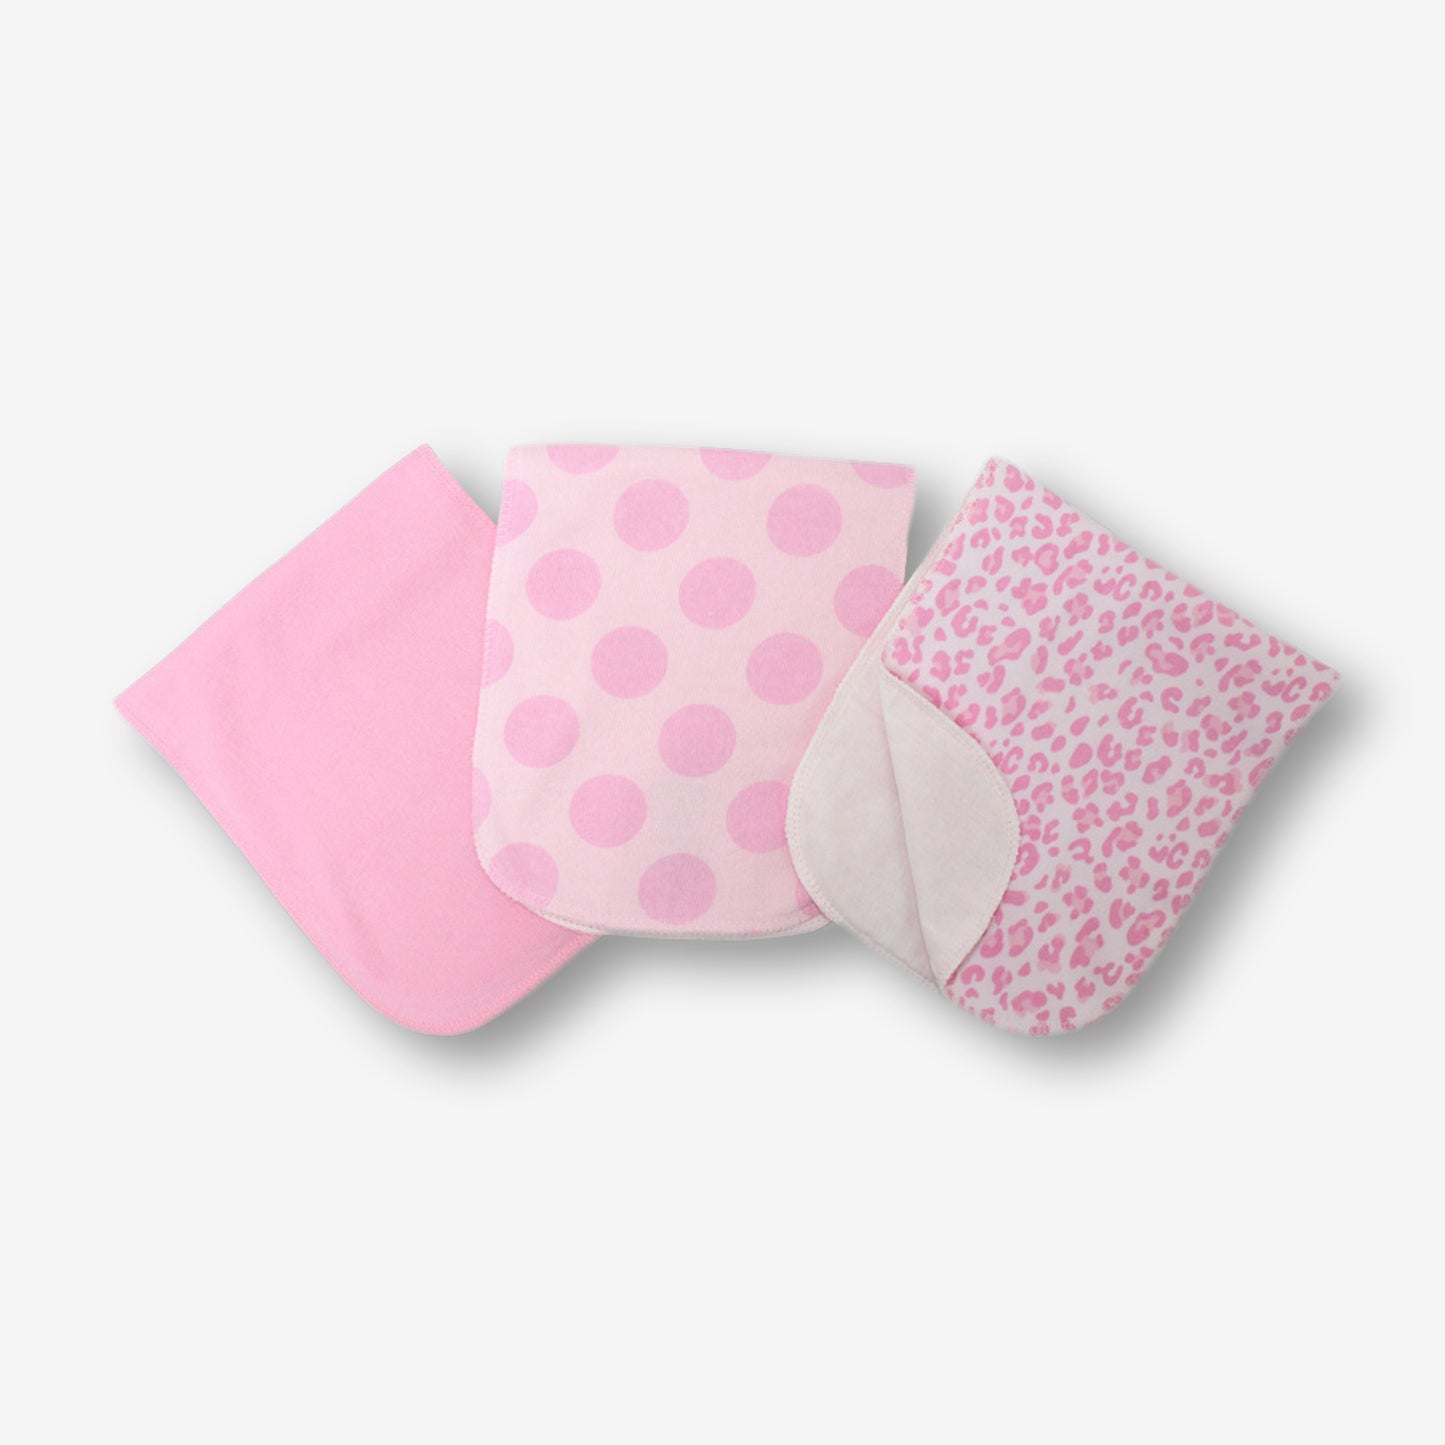 針織汗巾3件裝-粉紅色+波點+豹紋印花